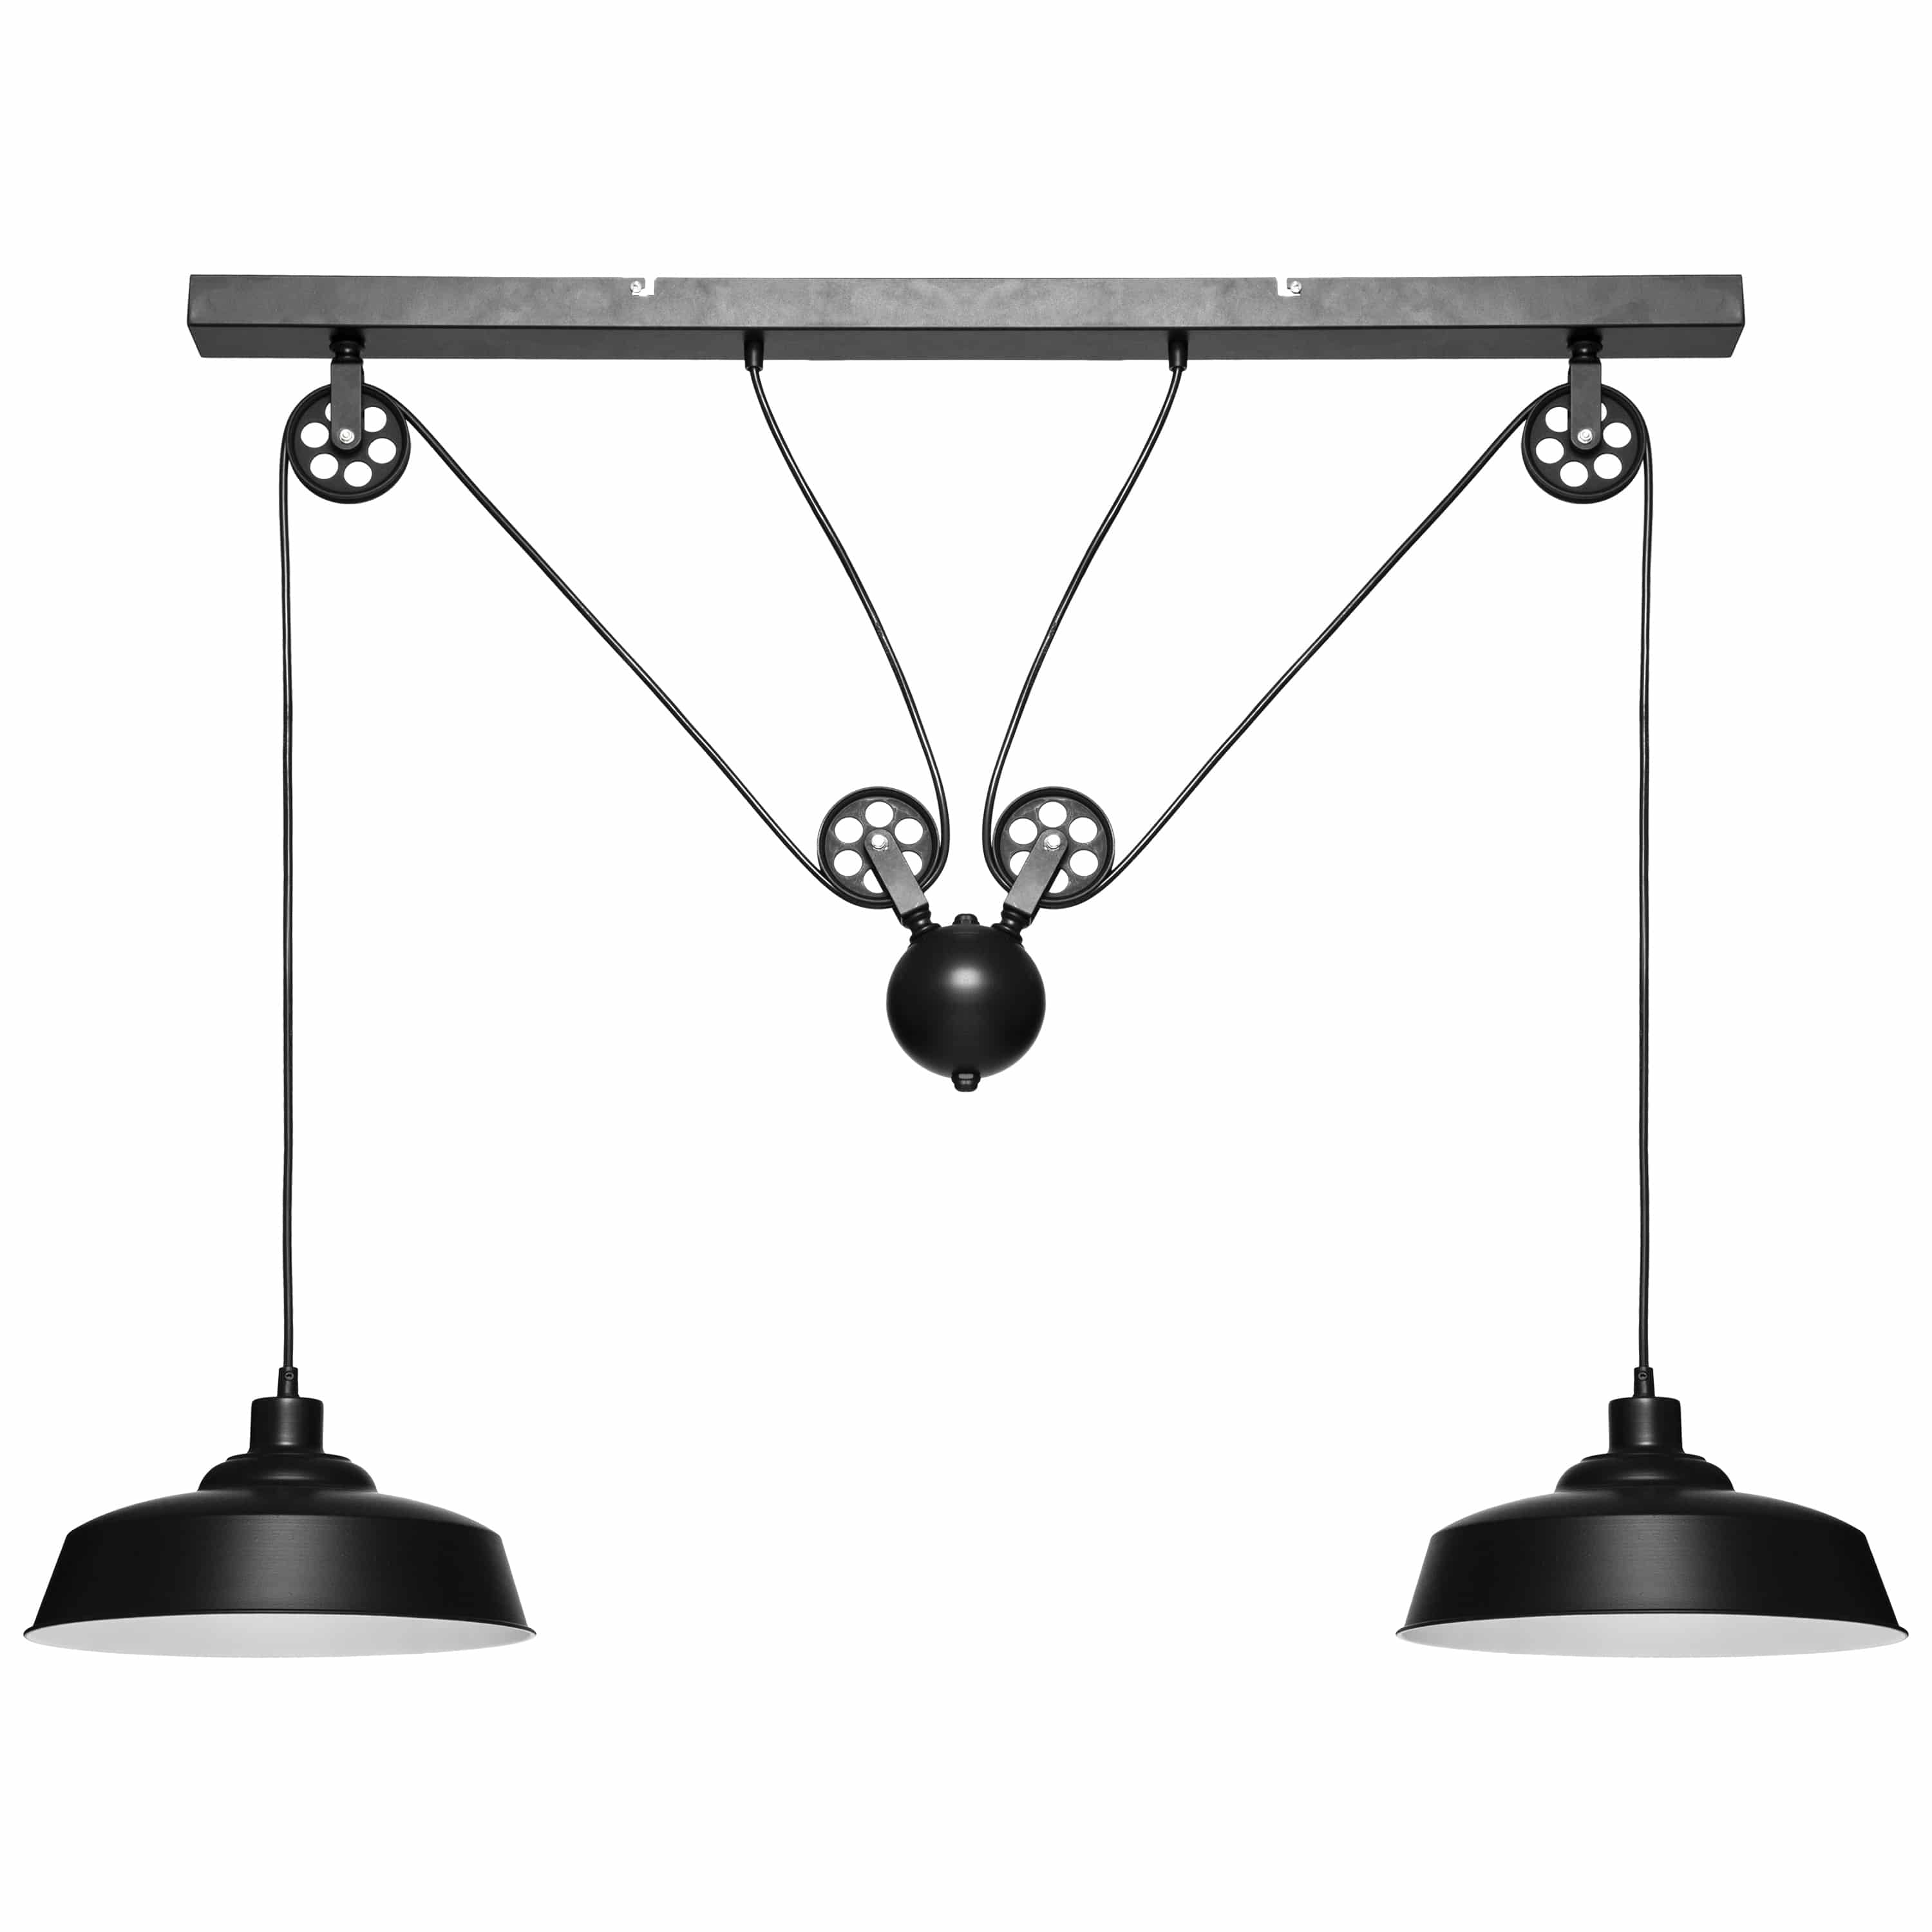 Eettafellamp Industrial 120x60 cm met 2 lampenkappen - Zwart